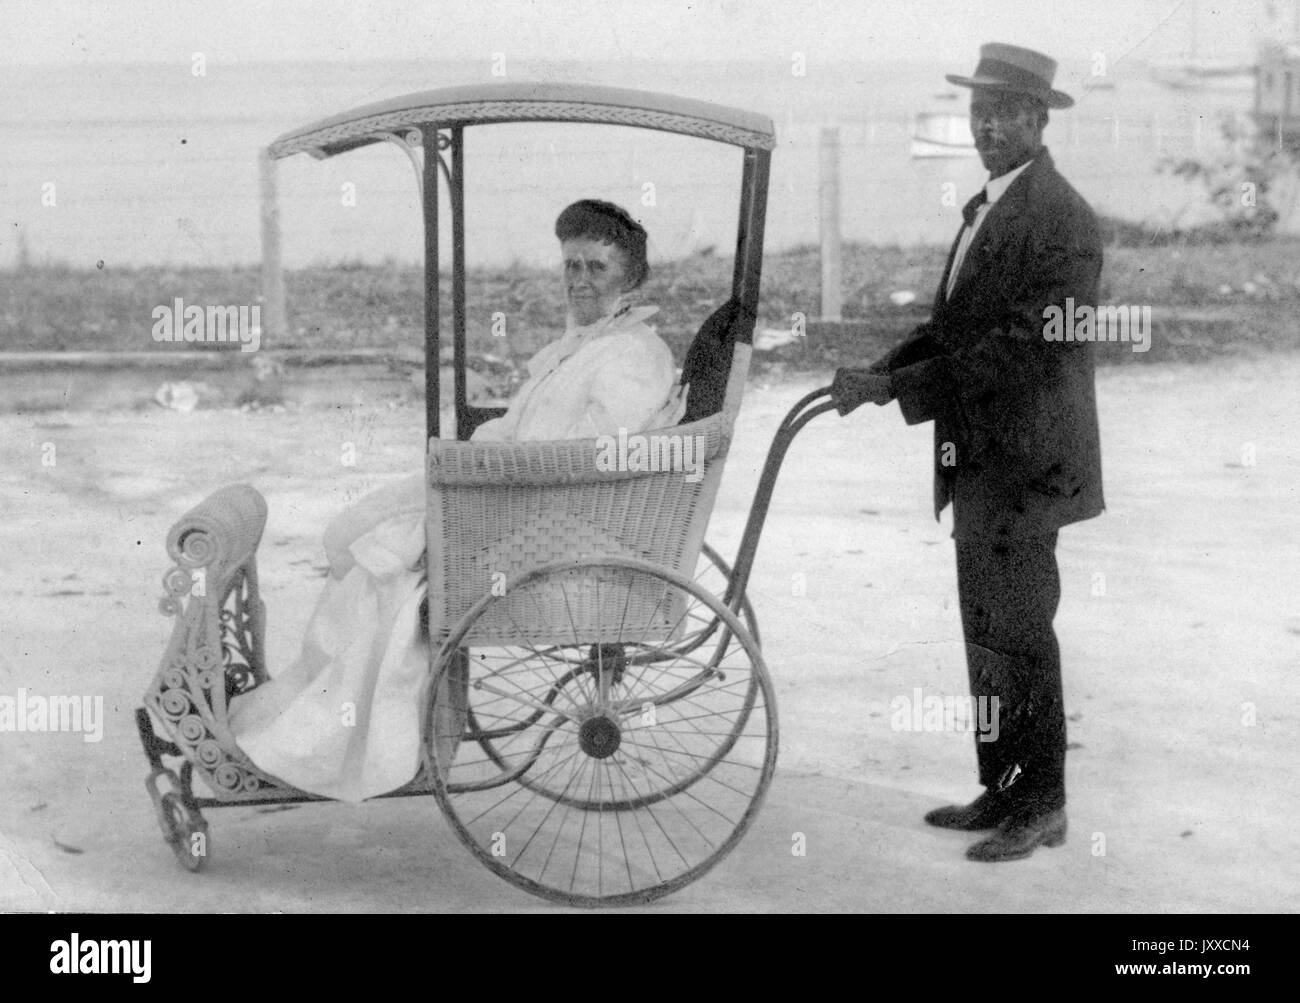 Portrait complet d'un homme afro-américain portant un costume et un chapeau sombres, poussant une femme blanche mûre qui porte une robe blanche dans un chariot avec de grandes roues, 1920. Banque D'Images